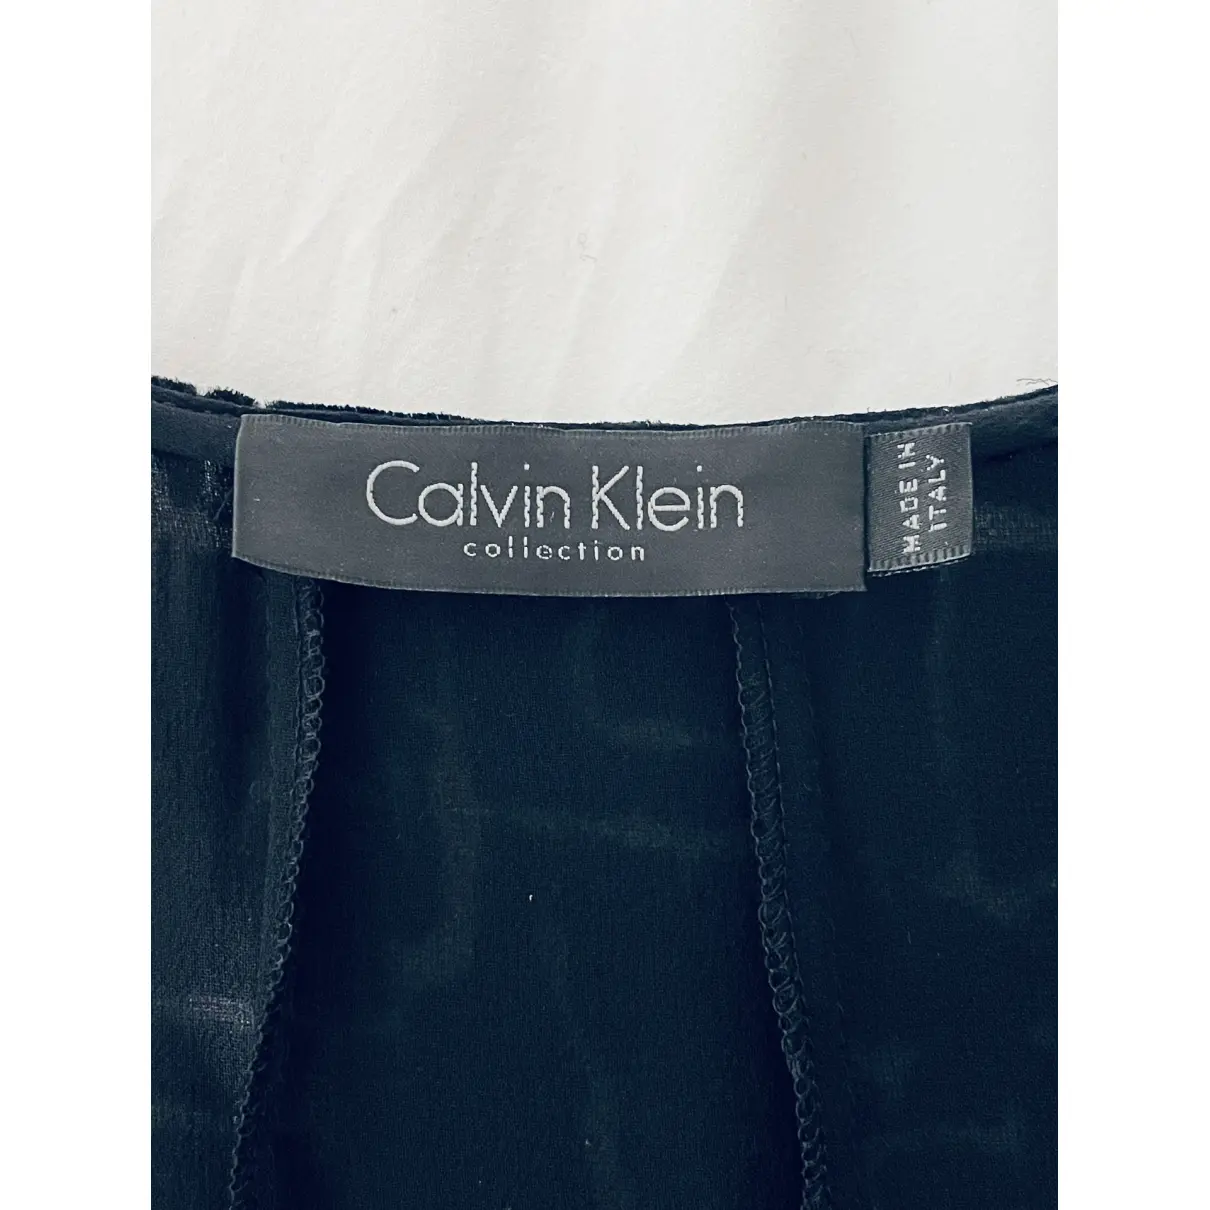 Dress Calvin Klein Collection